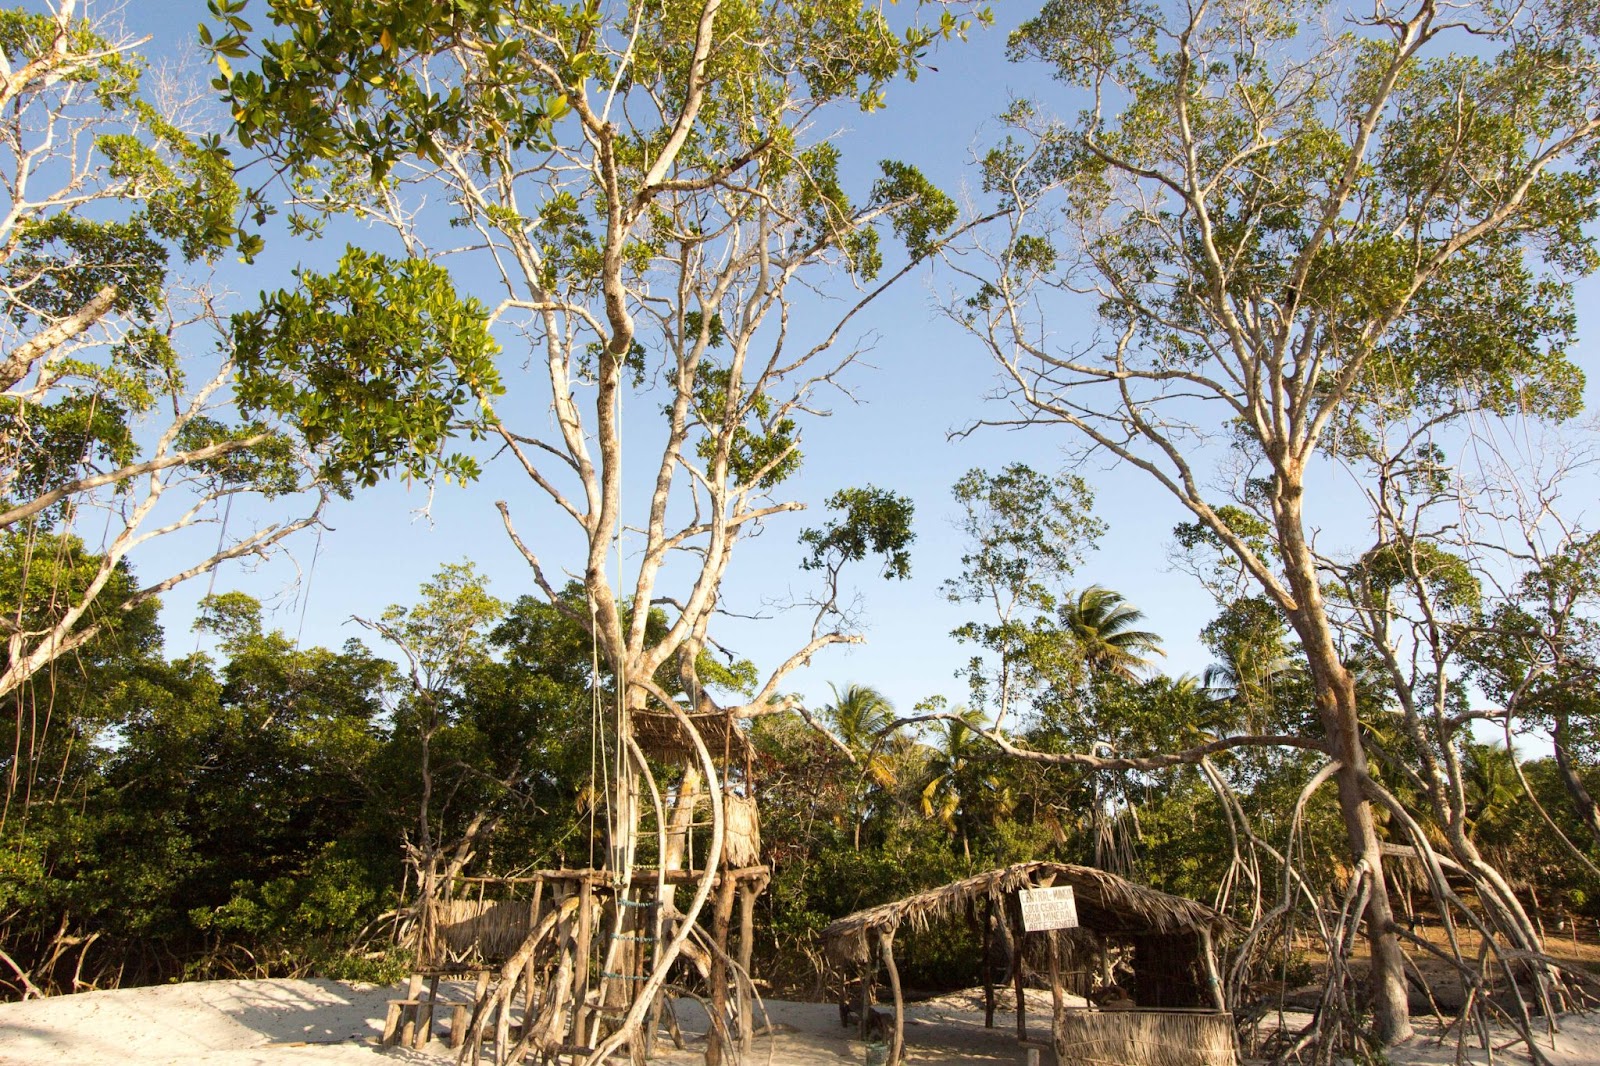 Vegetação típica de mangue na área da Praia de Mangue Seco em Jericoacoara